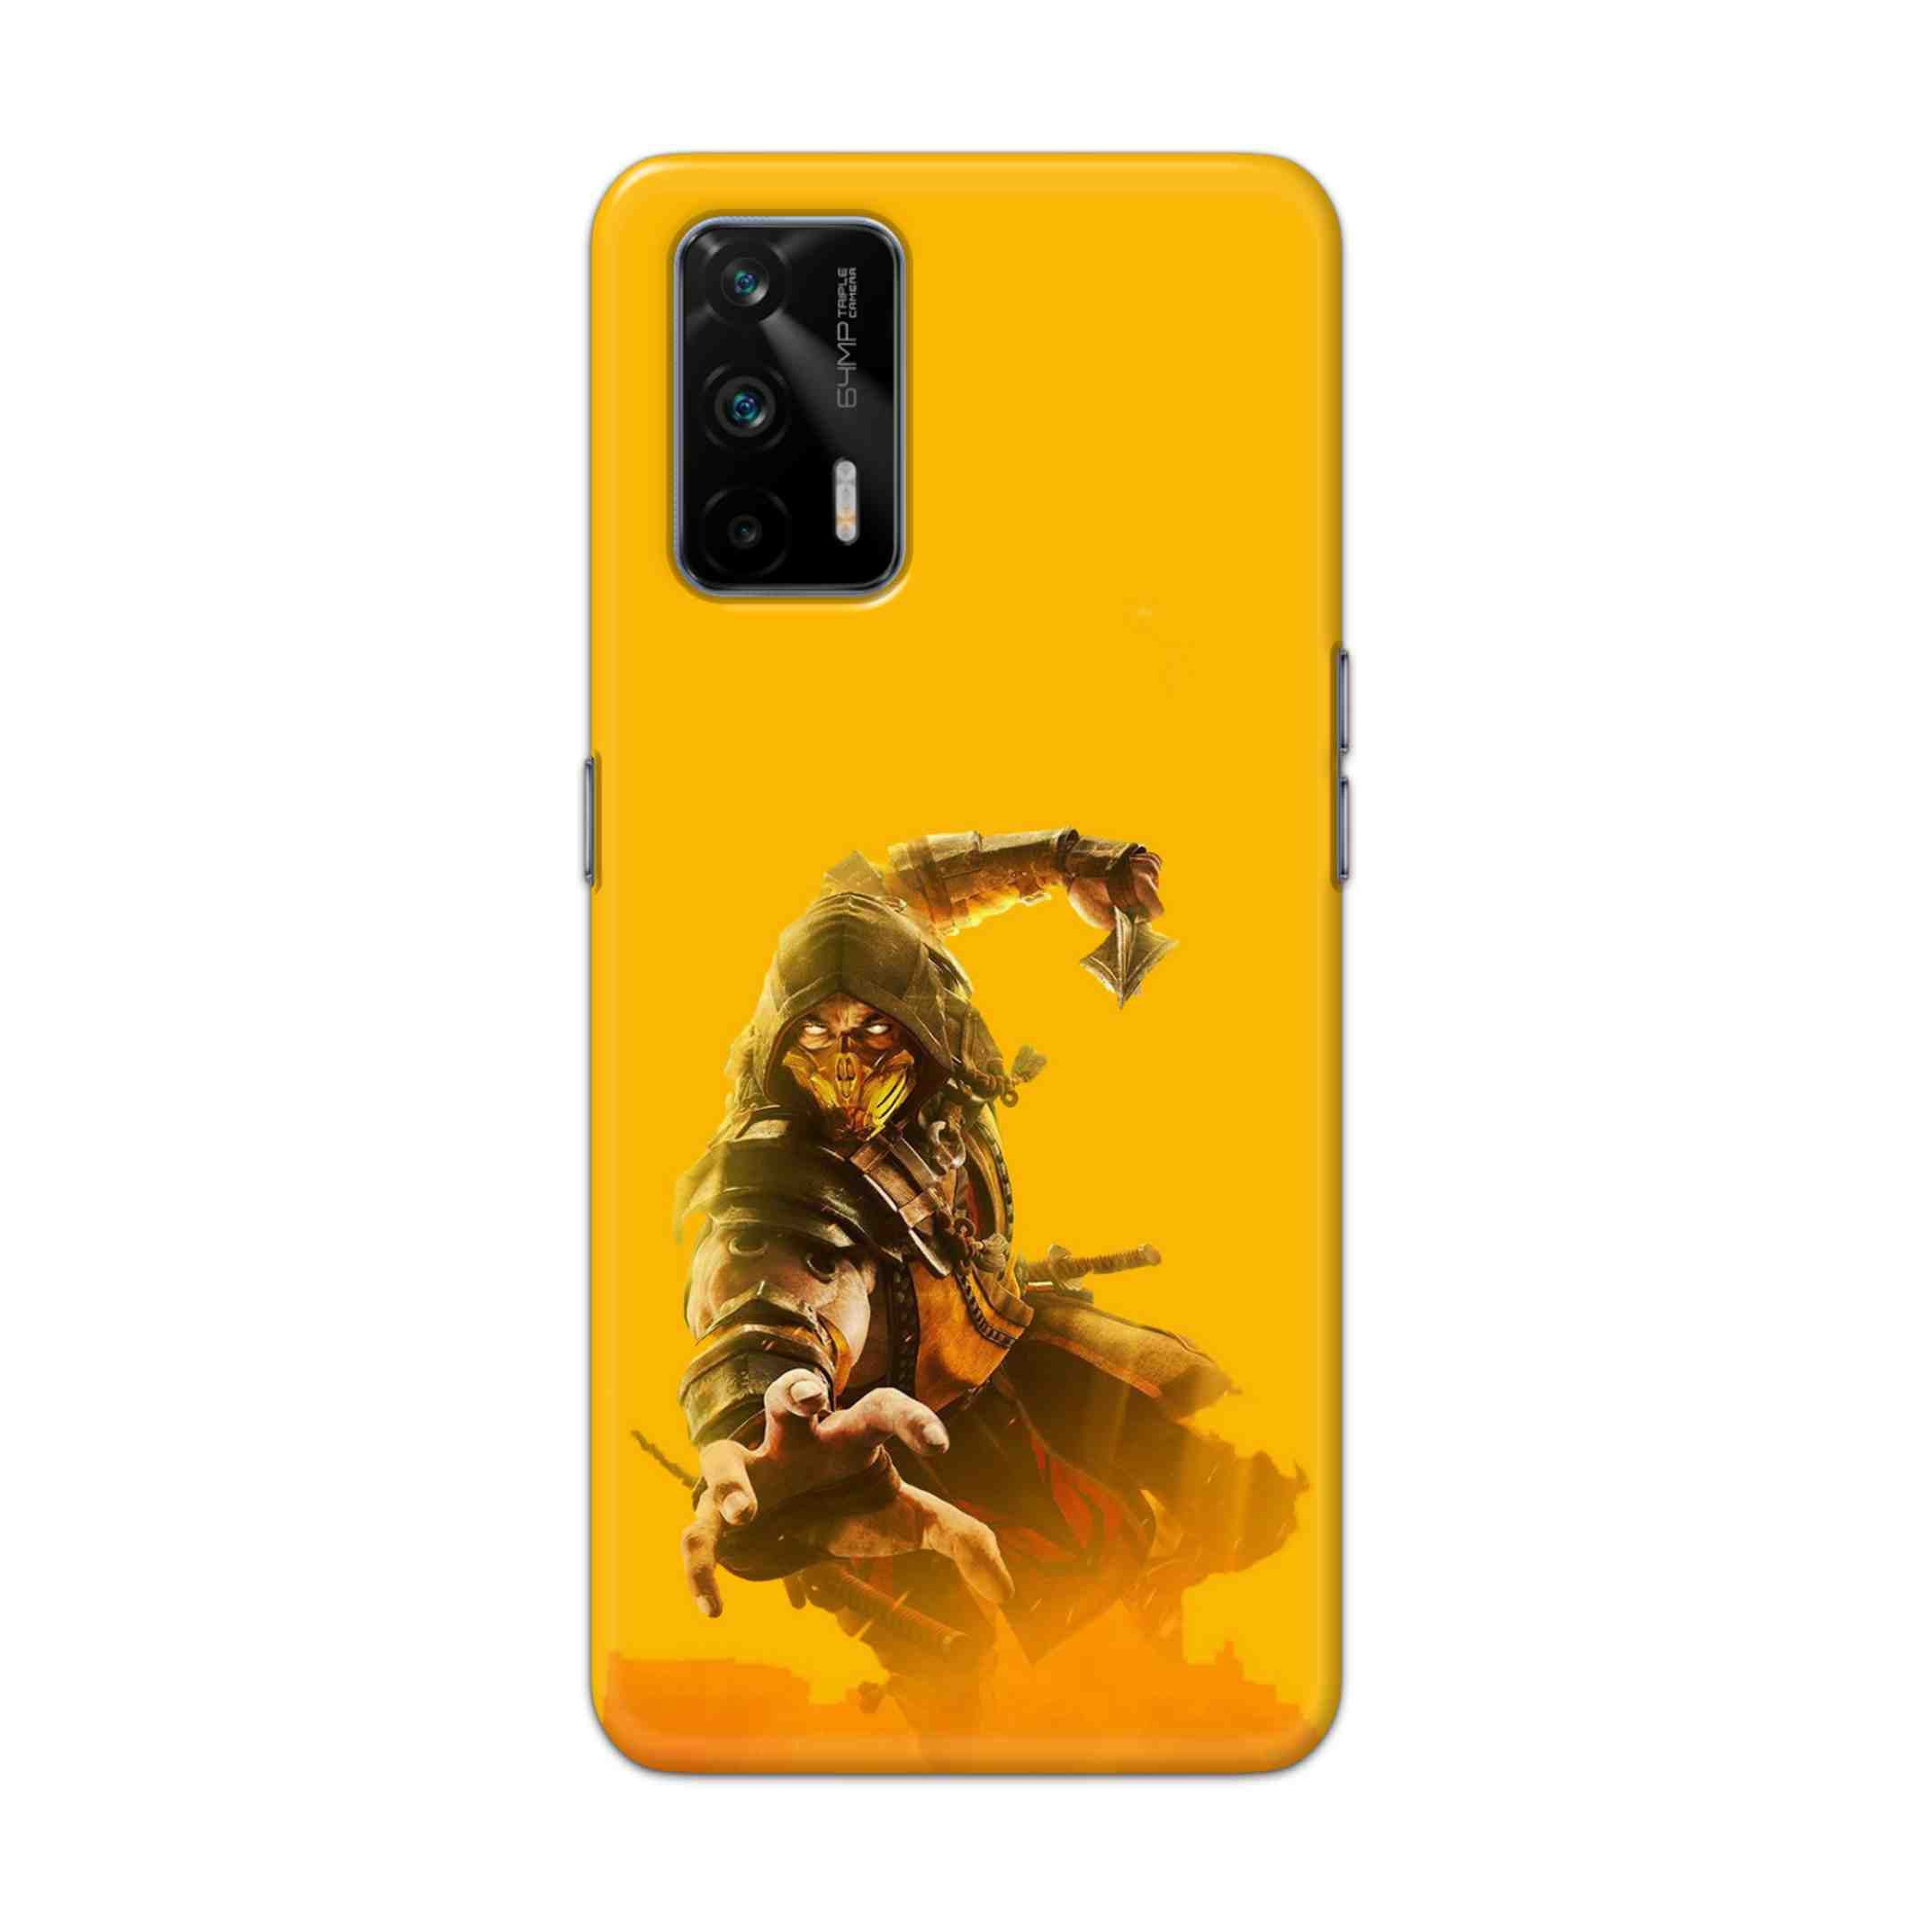 Buy Mortal Kombat Hard Back Mobile Phone Case Cover For Realme GT 5G Online